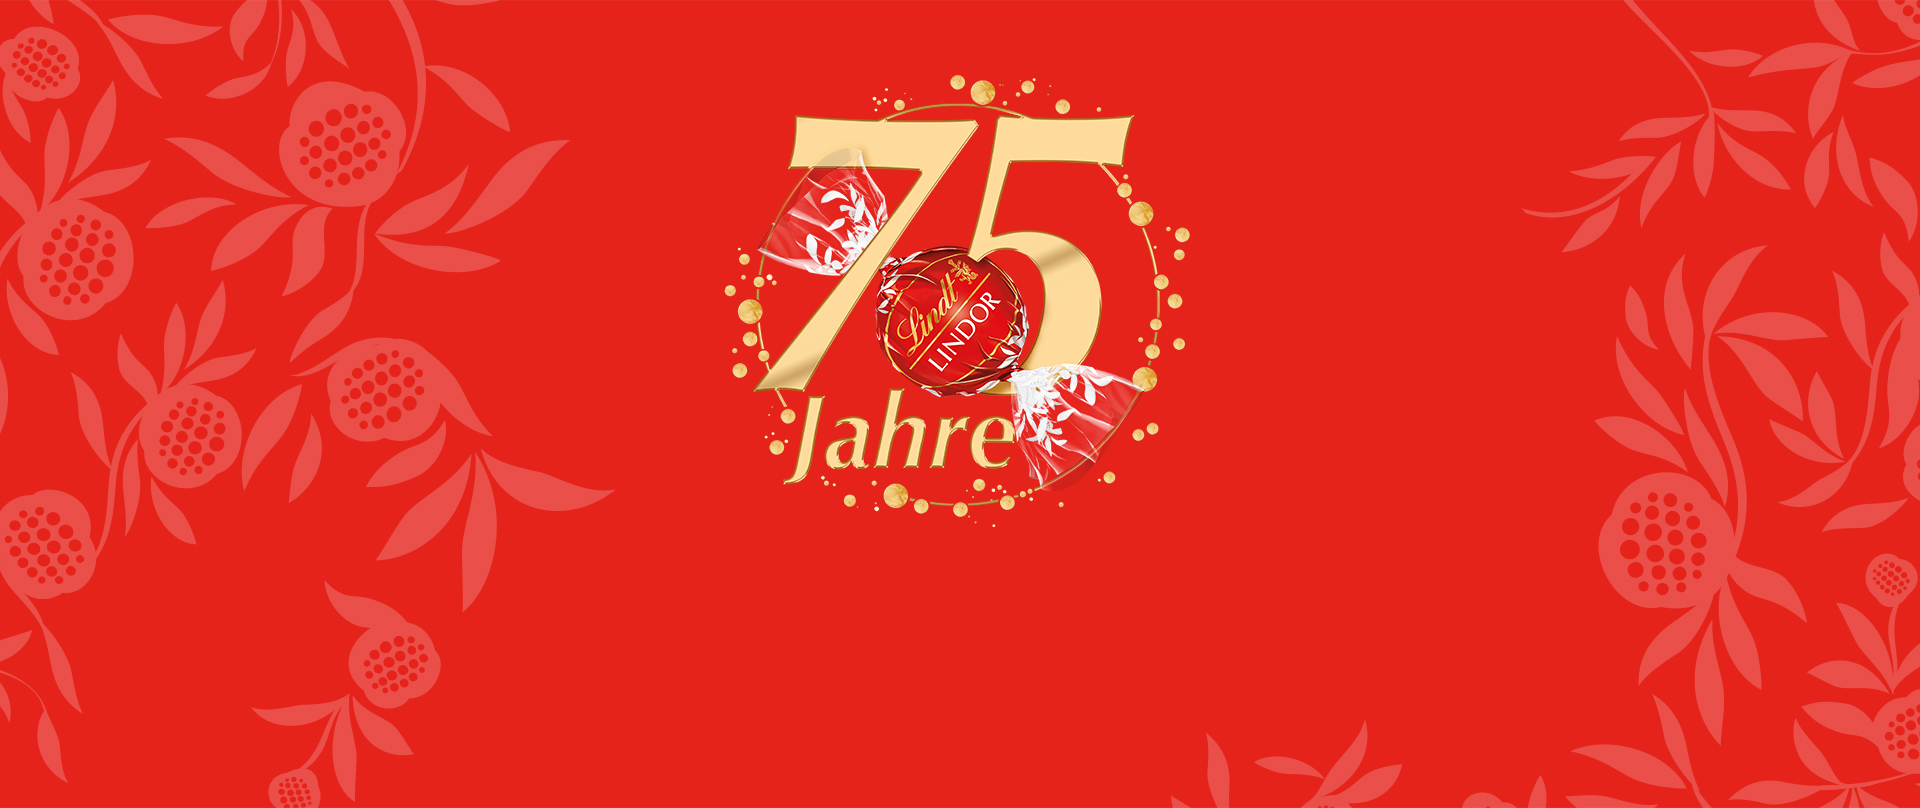 75-Jahre-Logo auf roten Hintergrund (Foto)